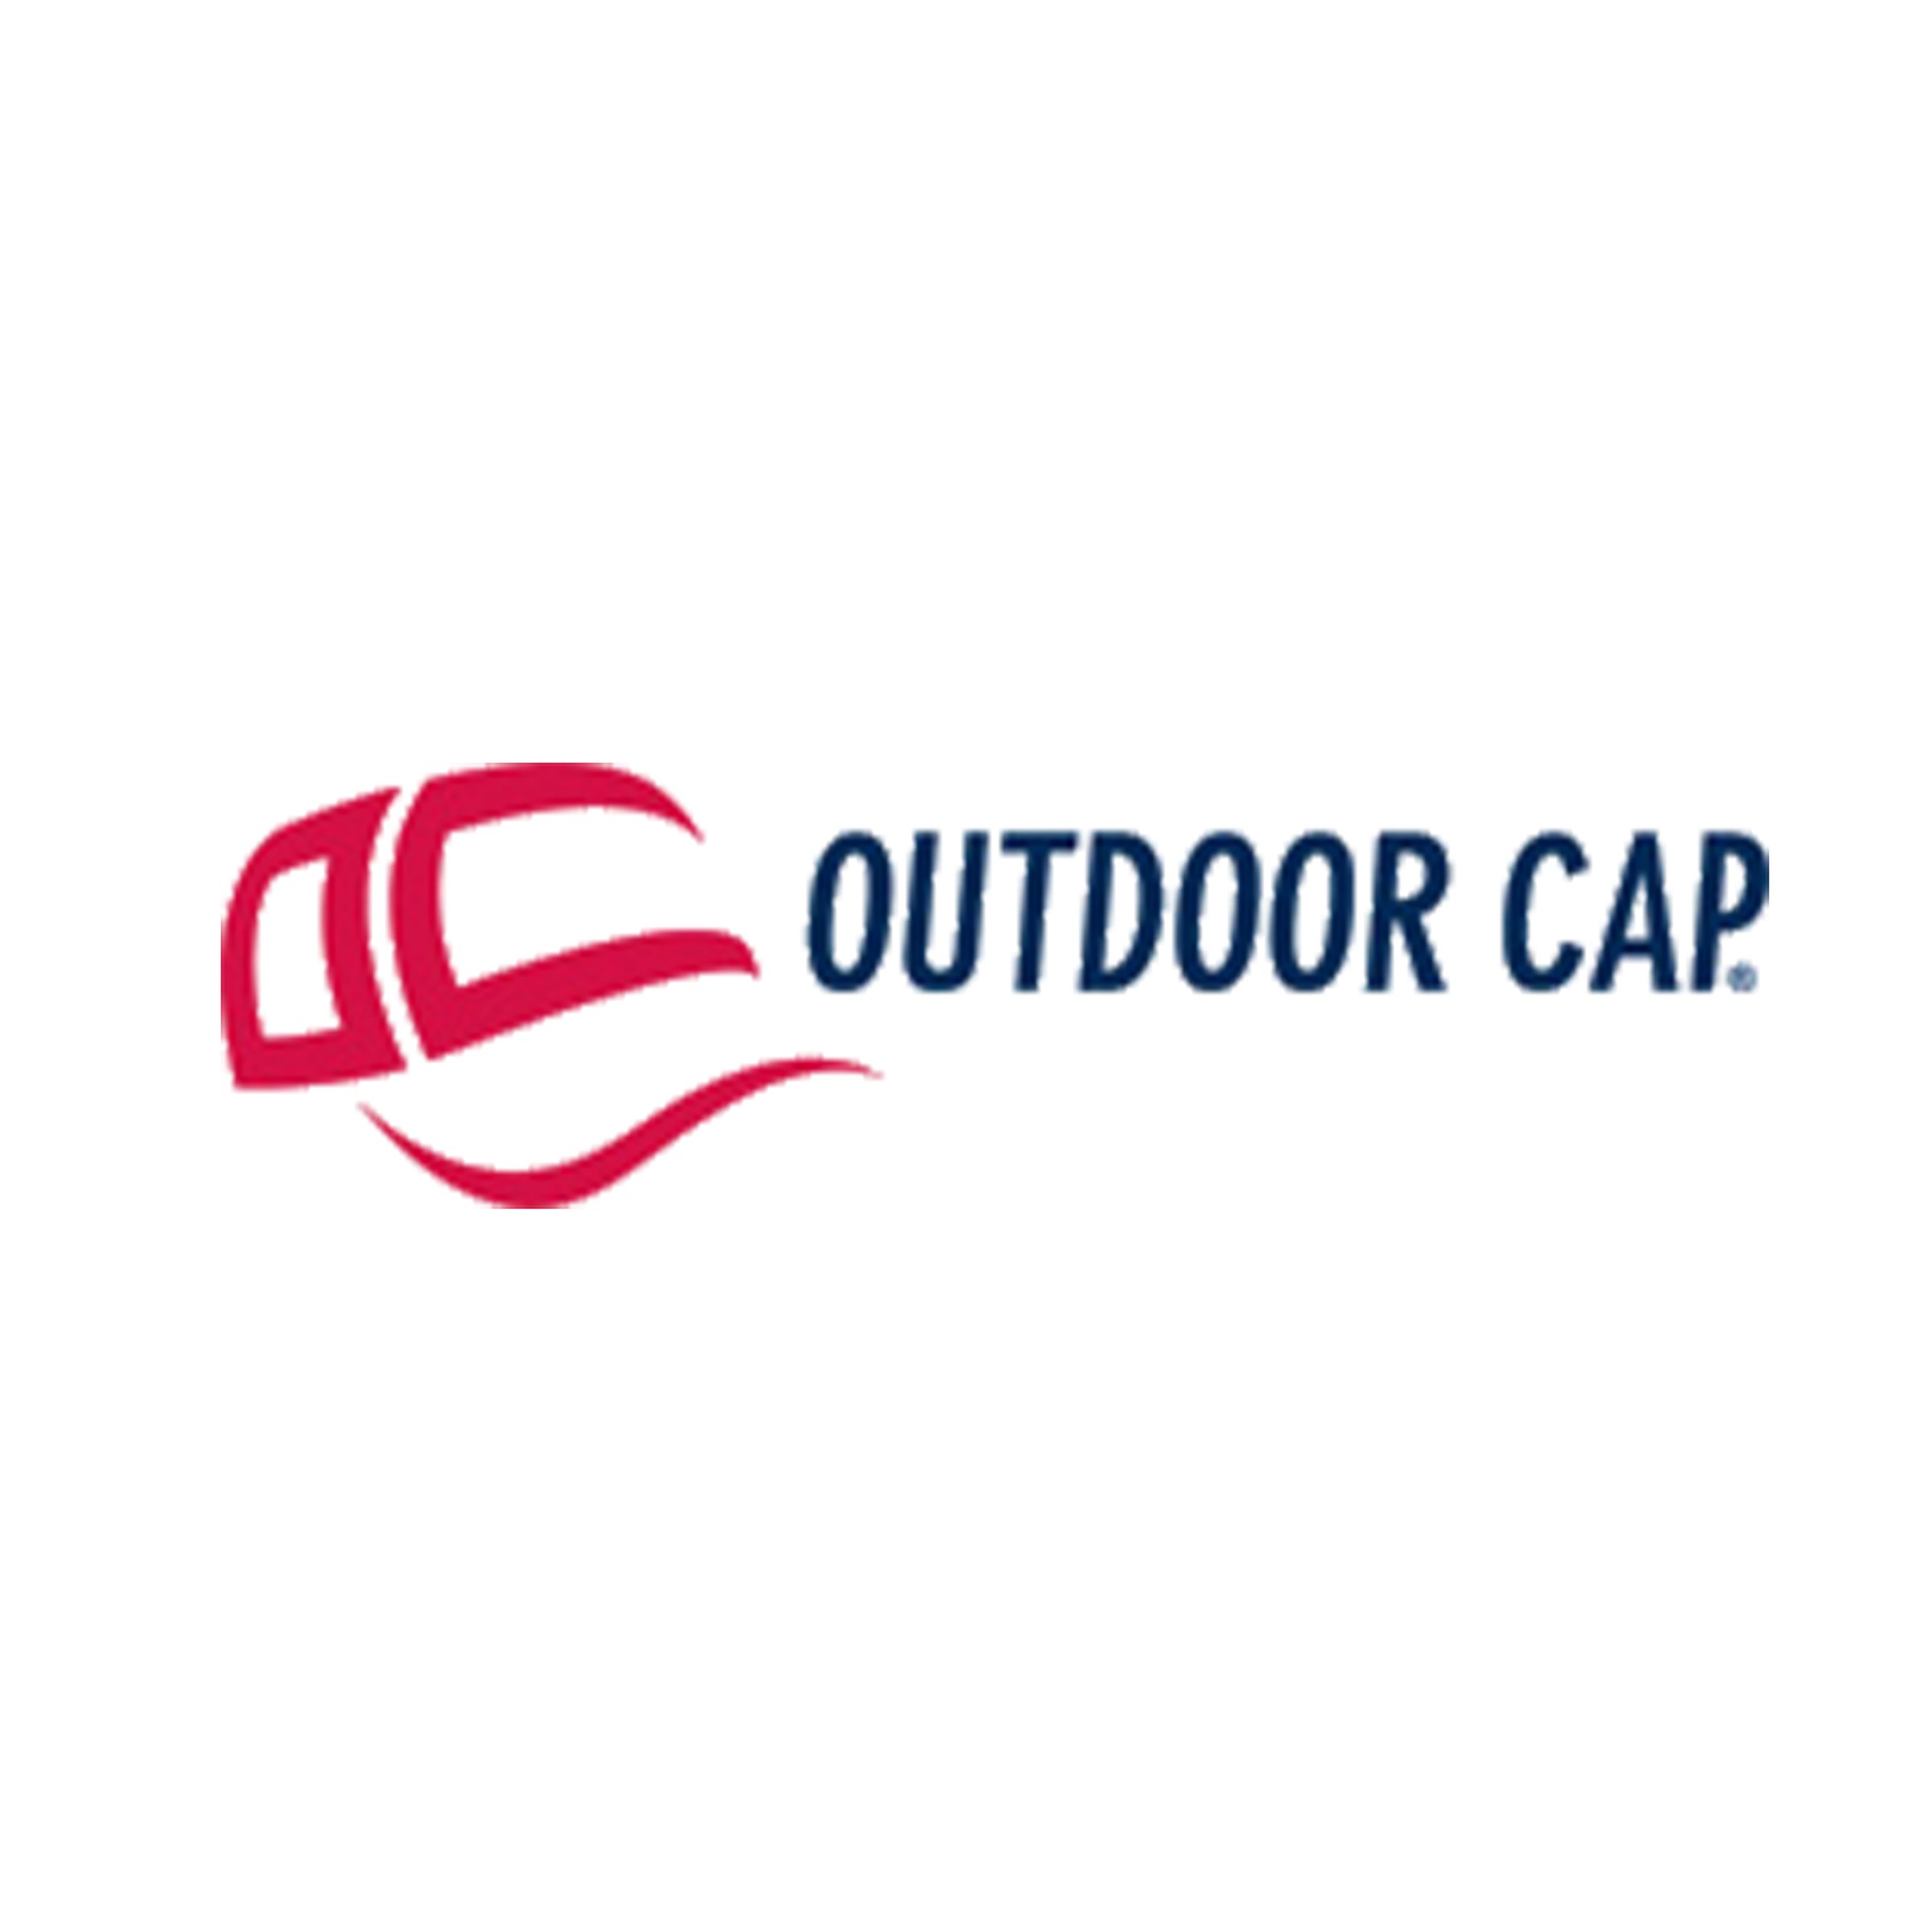 840-Outdoor Cap